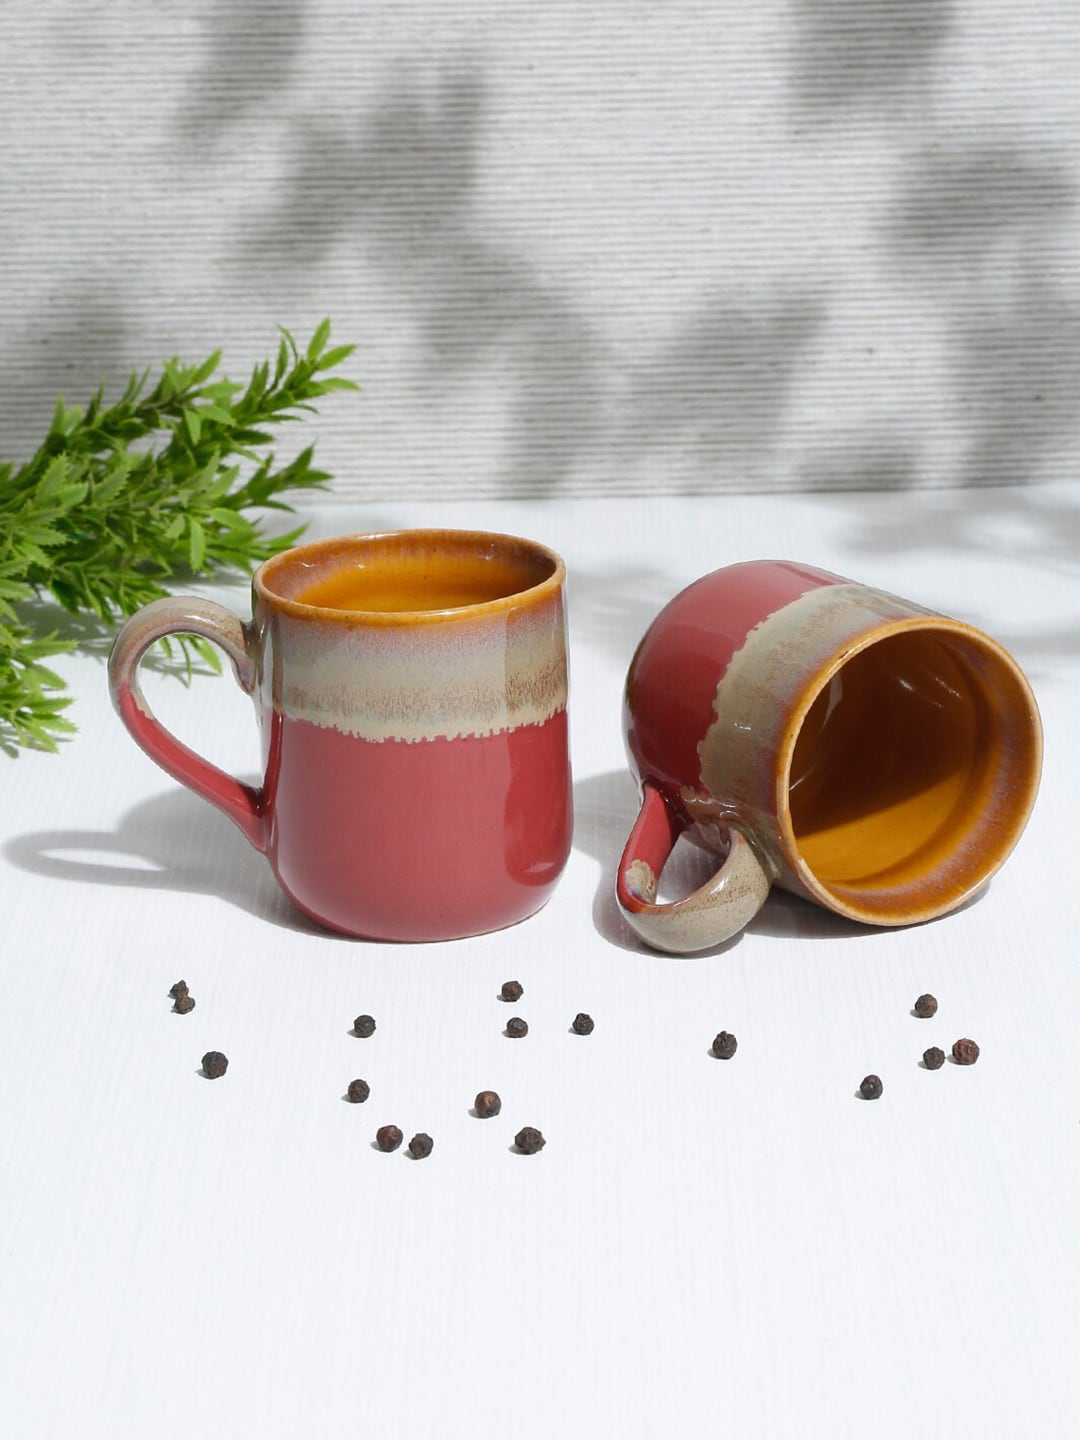 EK BY EKTA KAPOOR Maroon & Brown Printed Ceramic Glossy Cups Set of Cups and Mugs Price in India